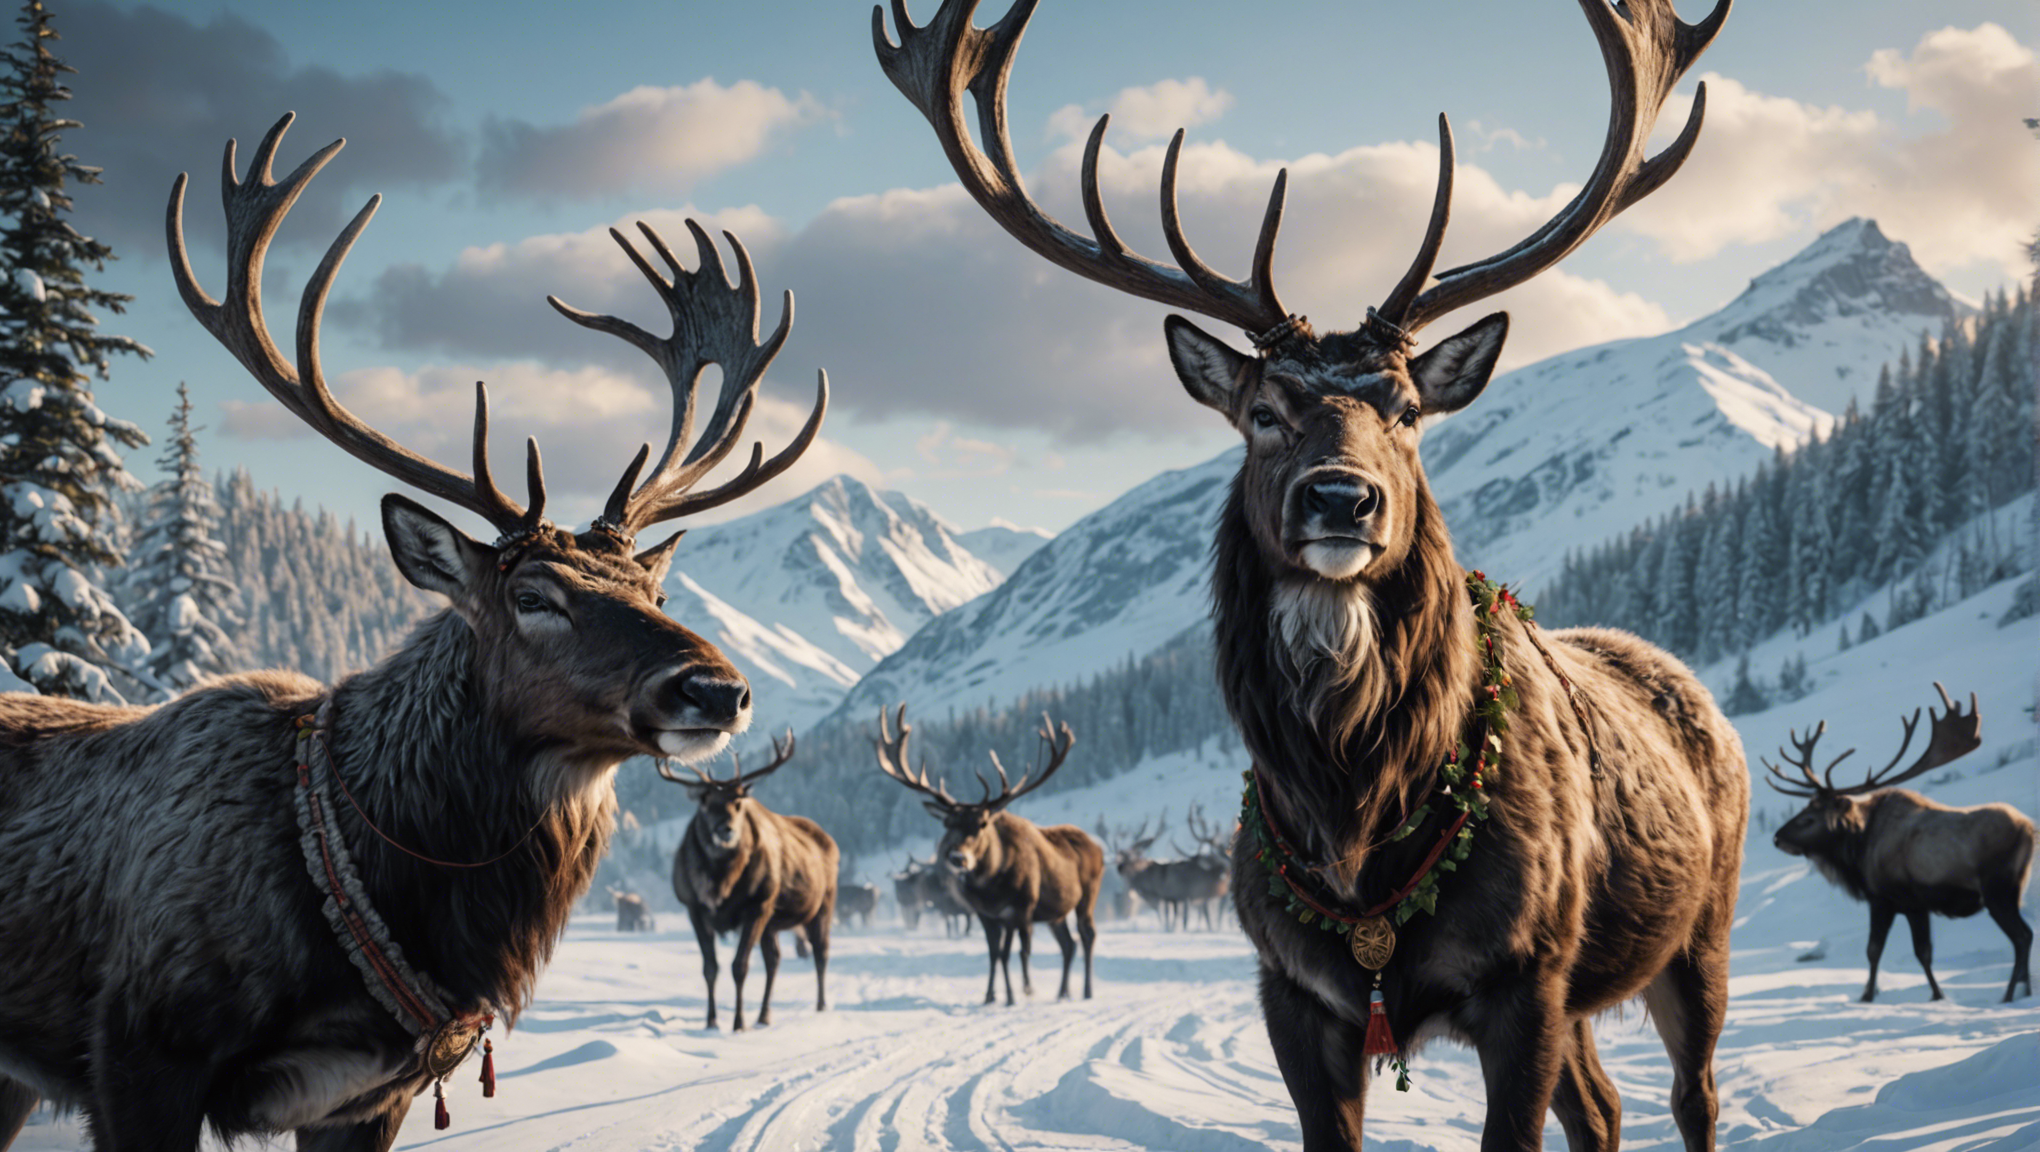 découvrez les légendes fascinantes liées aux liens entre les rennes et les traditions des peuples nordiques. plongez dans l'univers mystique et ancestral de ces créatures majestueuses.